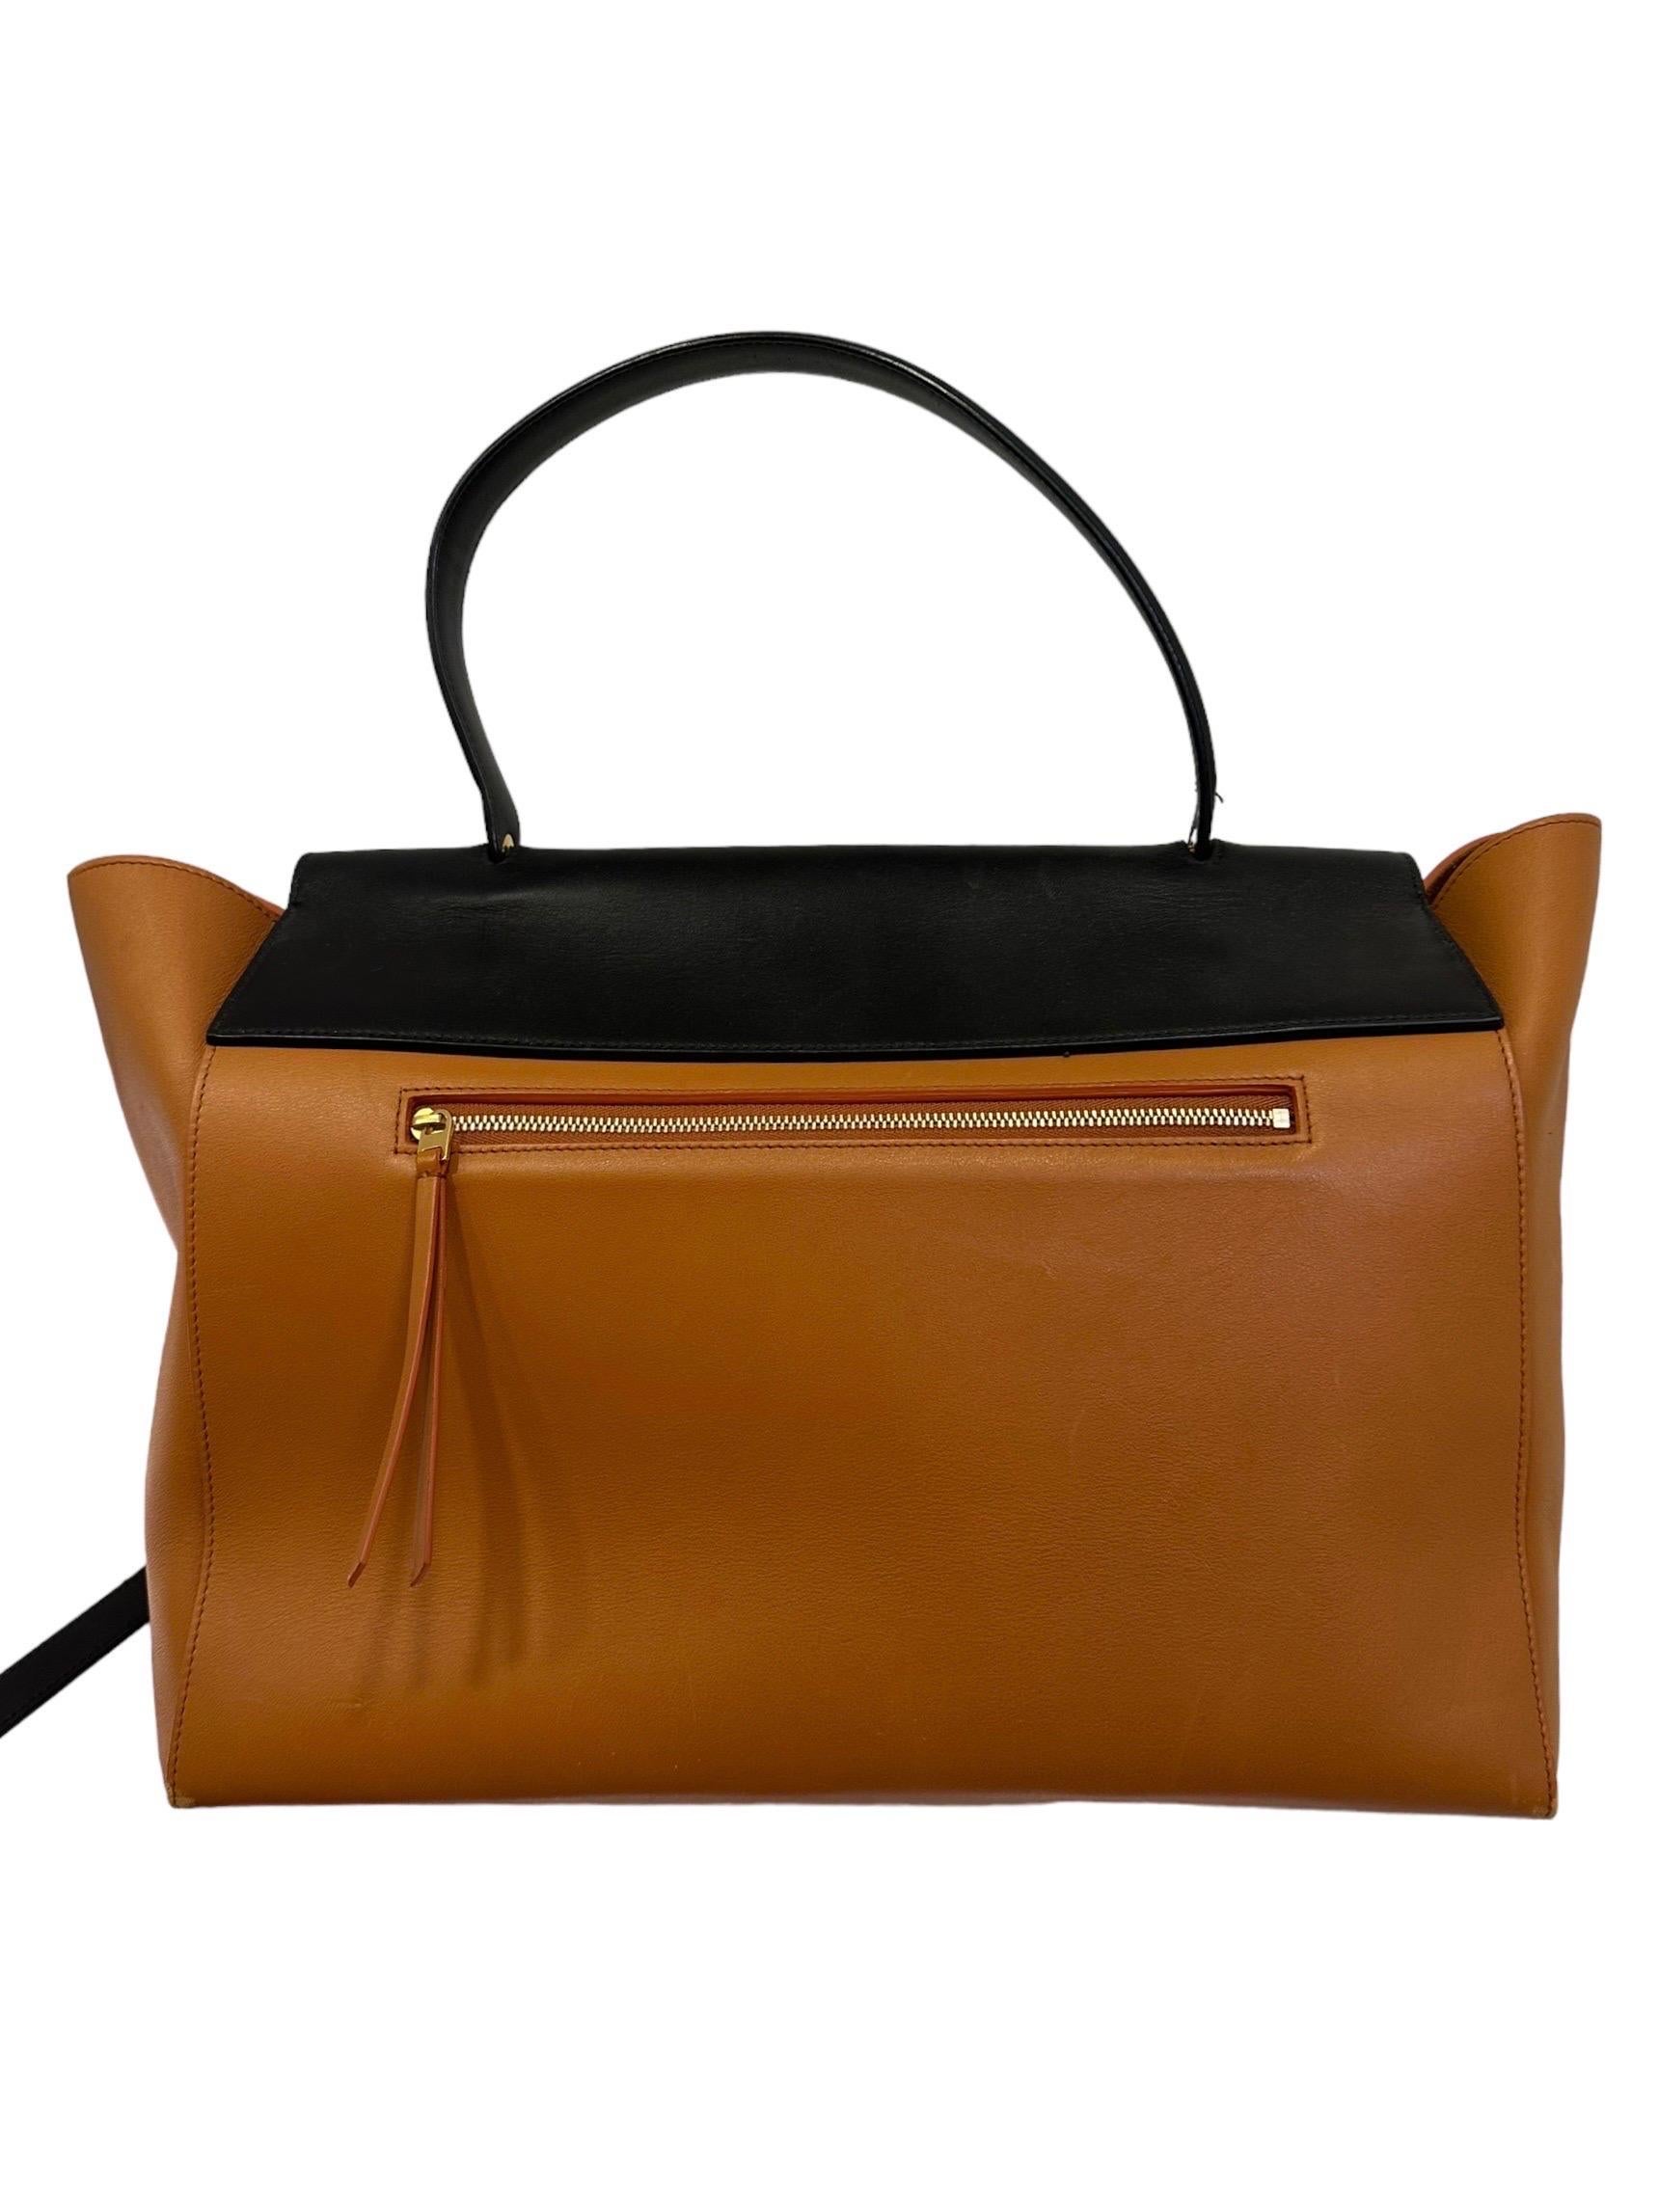 Celine Belt Bicolor Leather Tote Bag 2